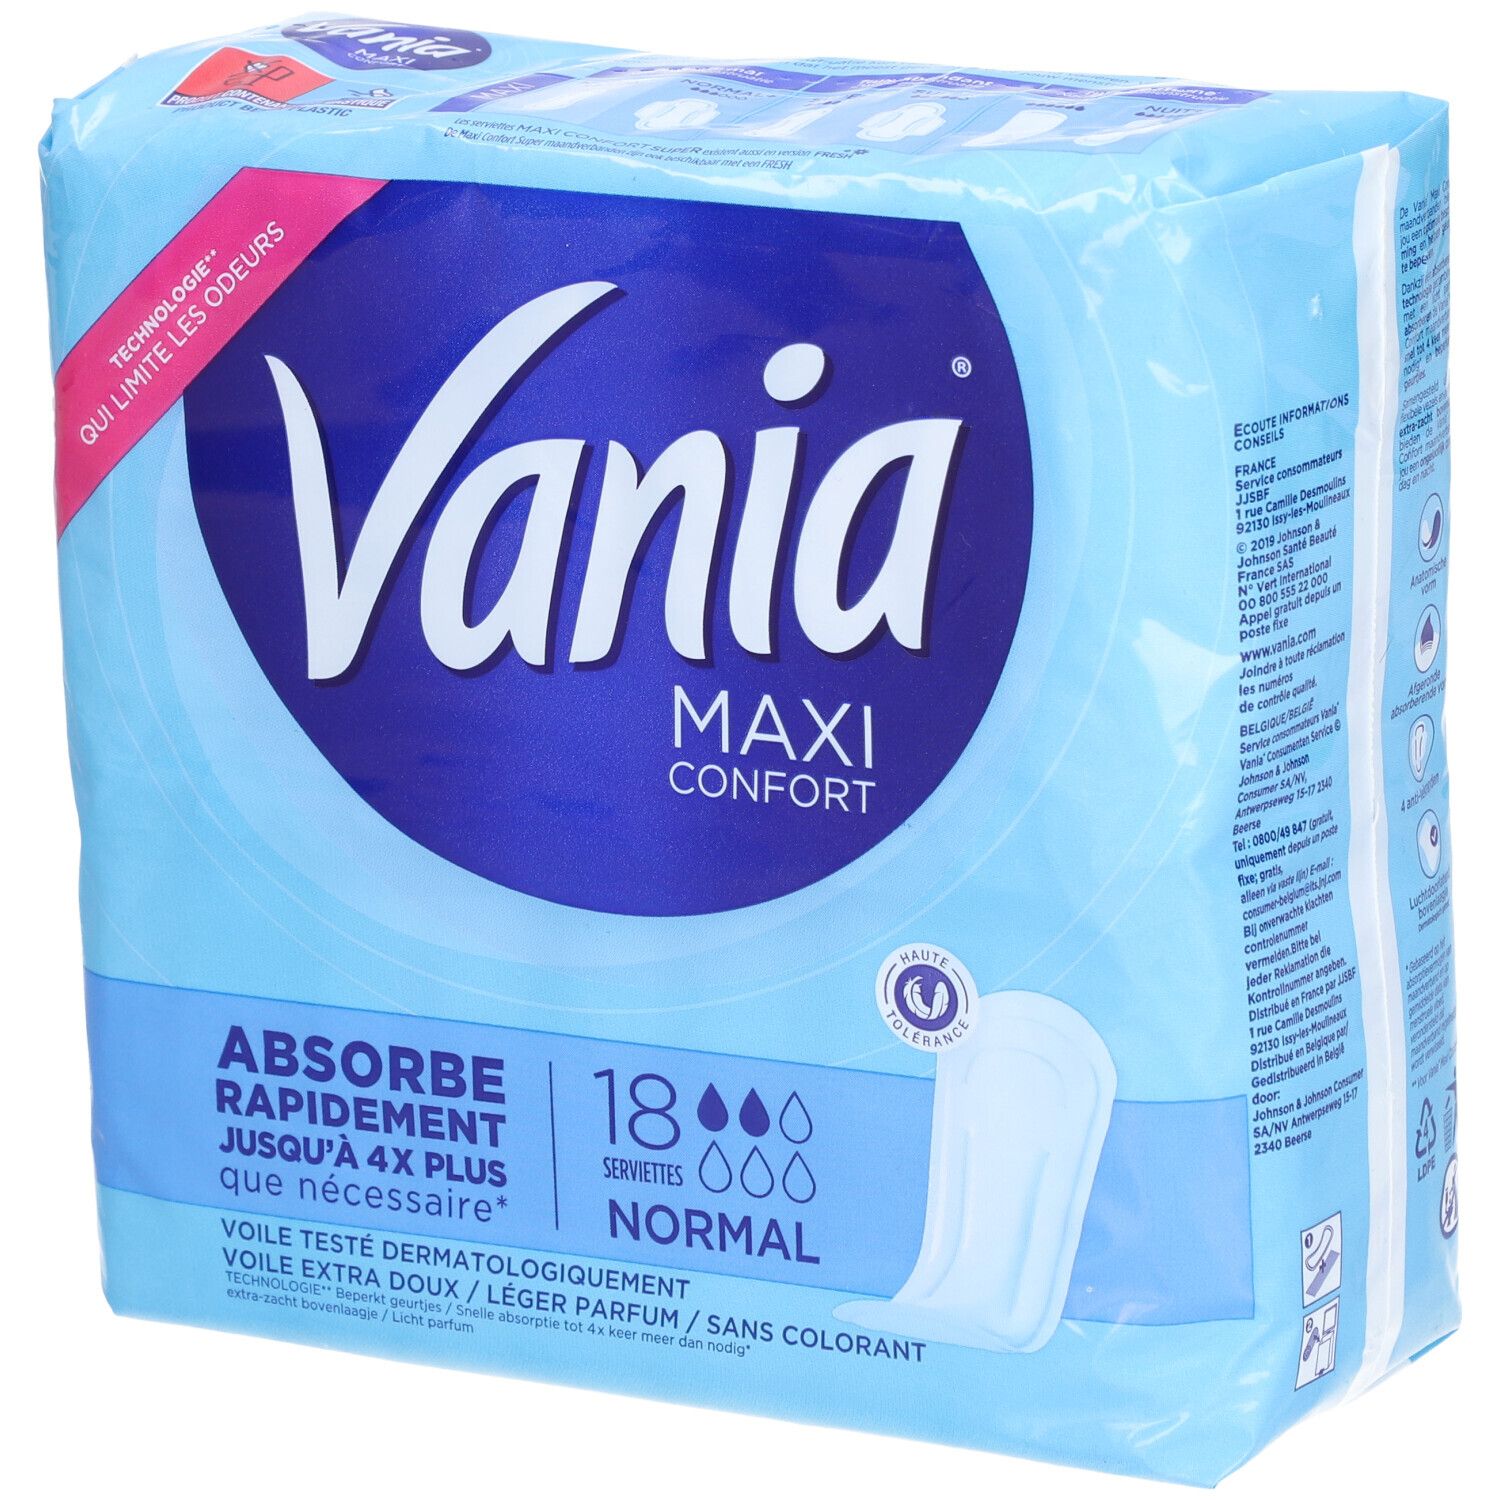 Vania Maxi Normal